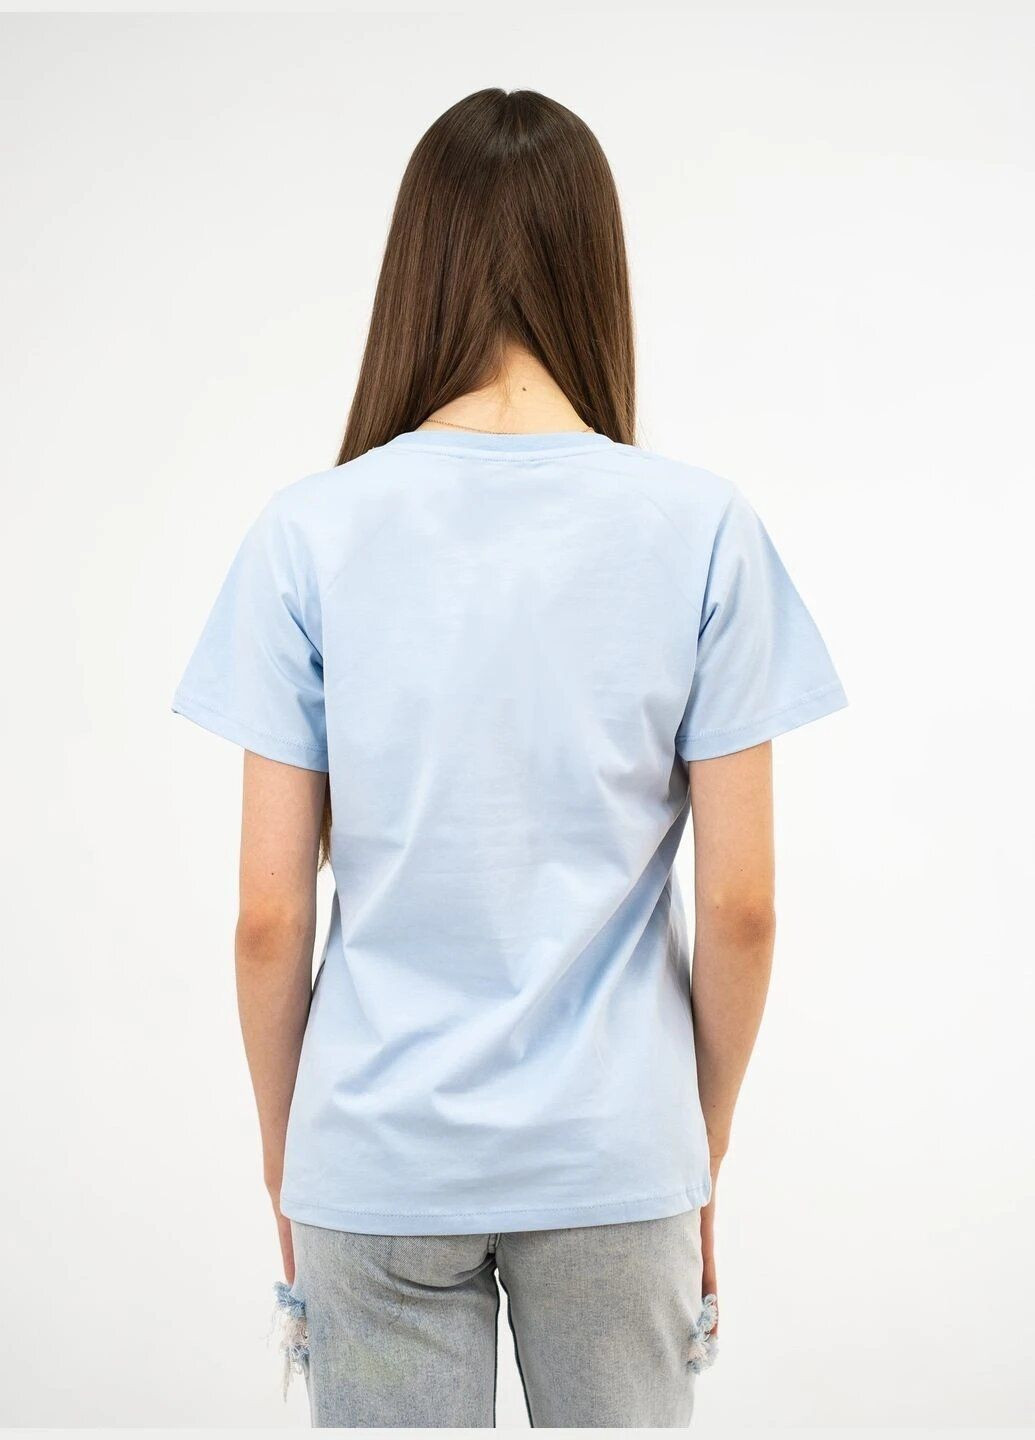 Светло-голубая летняя футболка женская летняя с рисунком с коротким рукавом Loewe TISORT